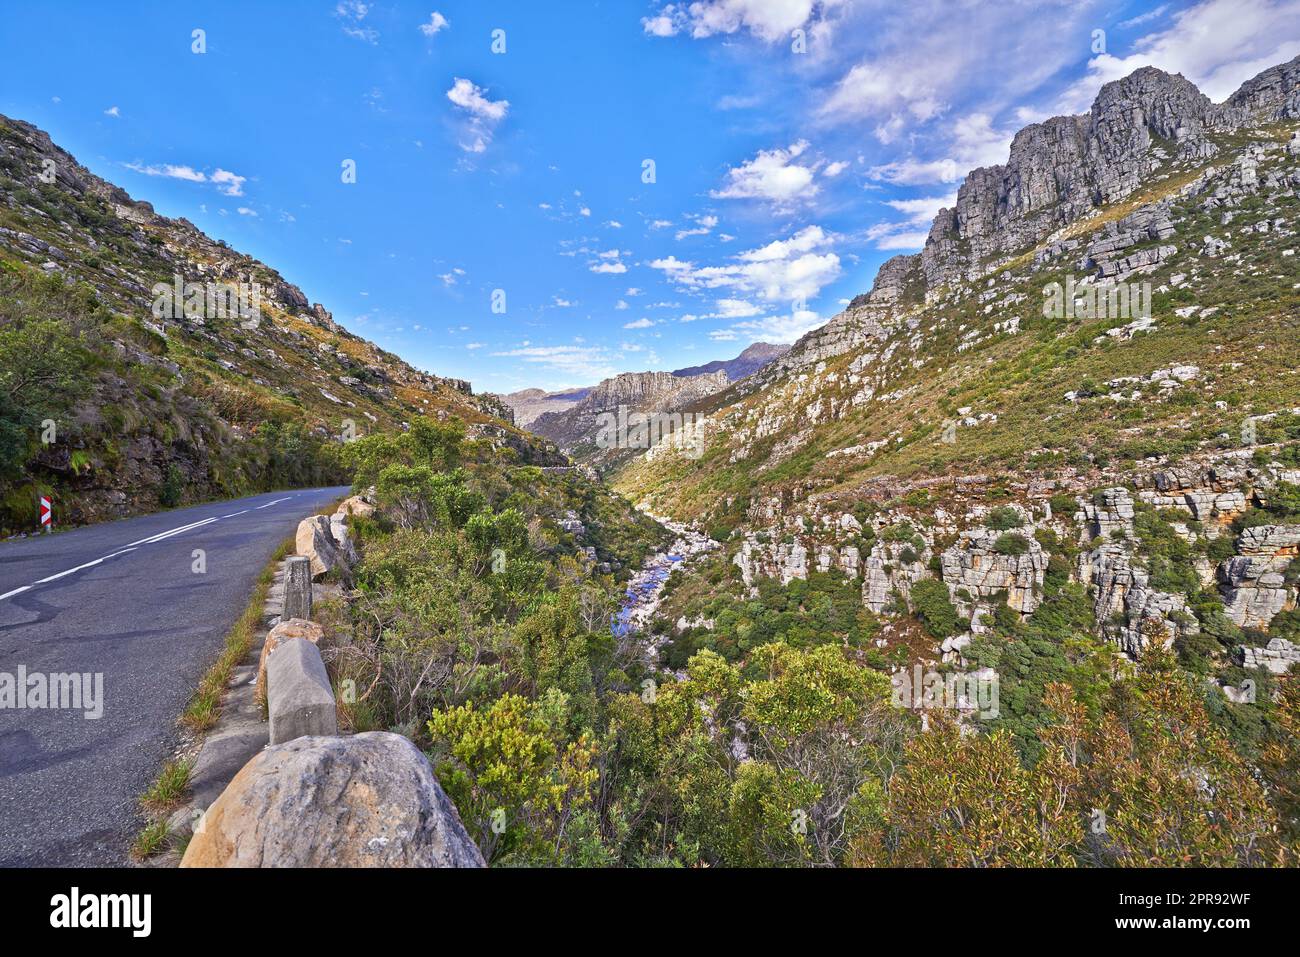 Leere Straße in den Bergen mit einem wolkigen blauen Himmel. Landschaft einer Landstraße für die Fahrt auf einem Bergpass entlang einer malerischen Naturstraße mit Grün und Blick auf die sanften Hügel Stockfoto